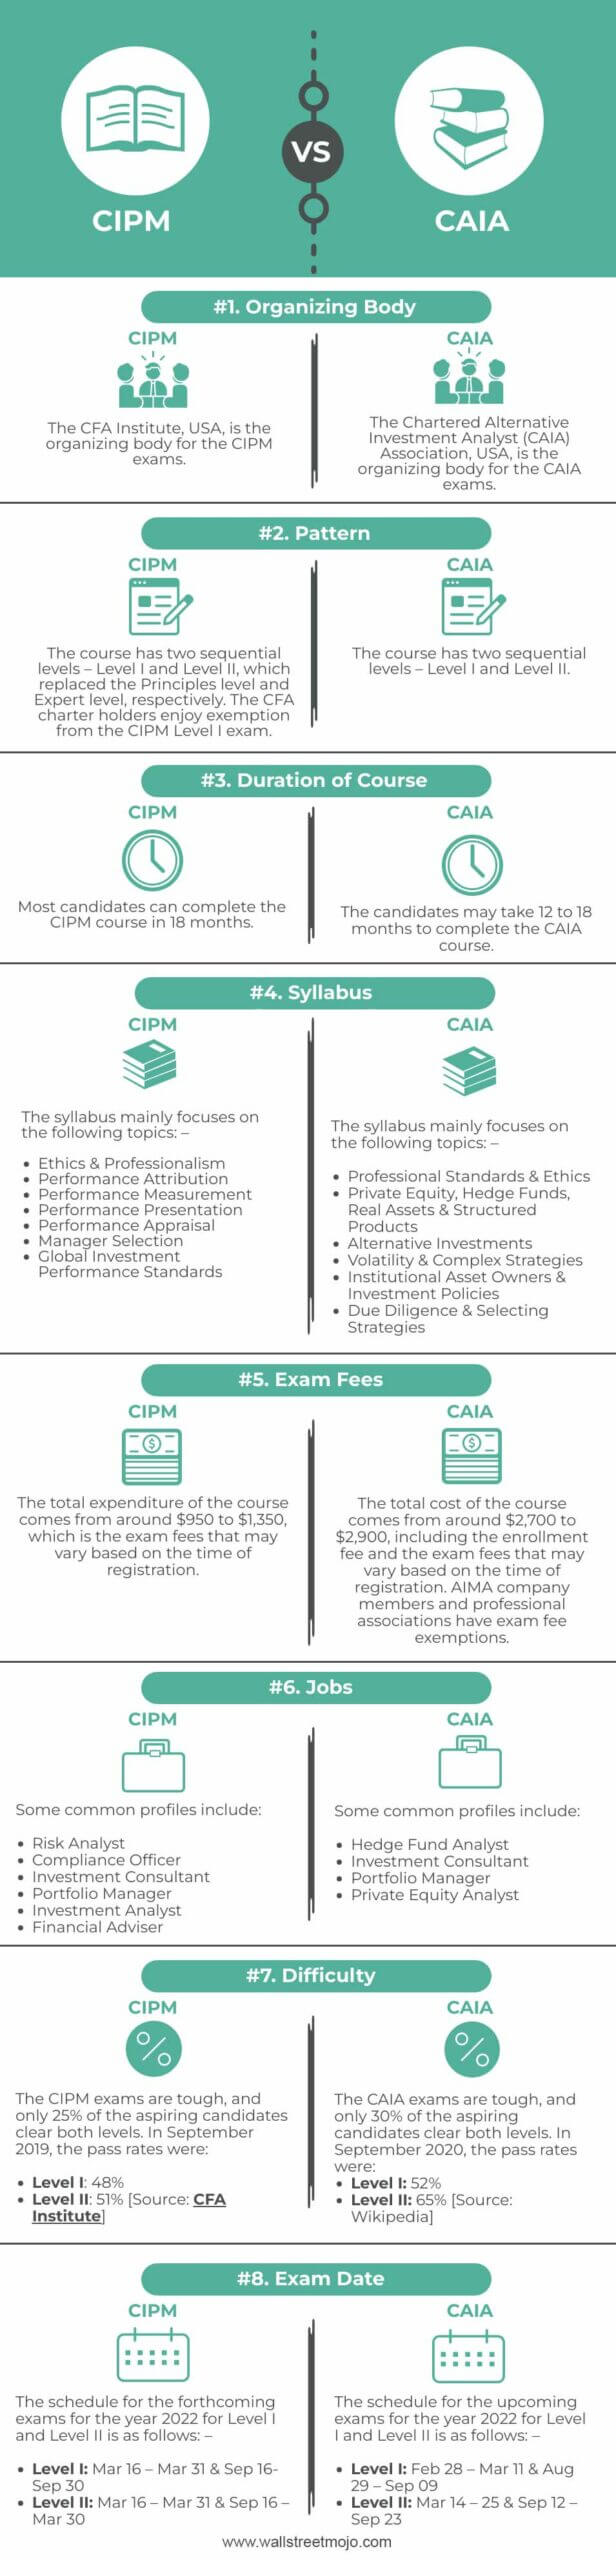 CIPM-vs-CAIA-info